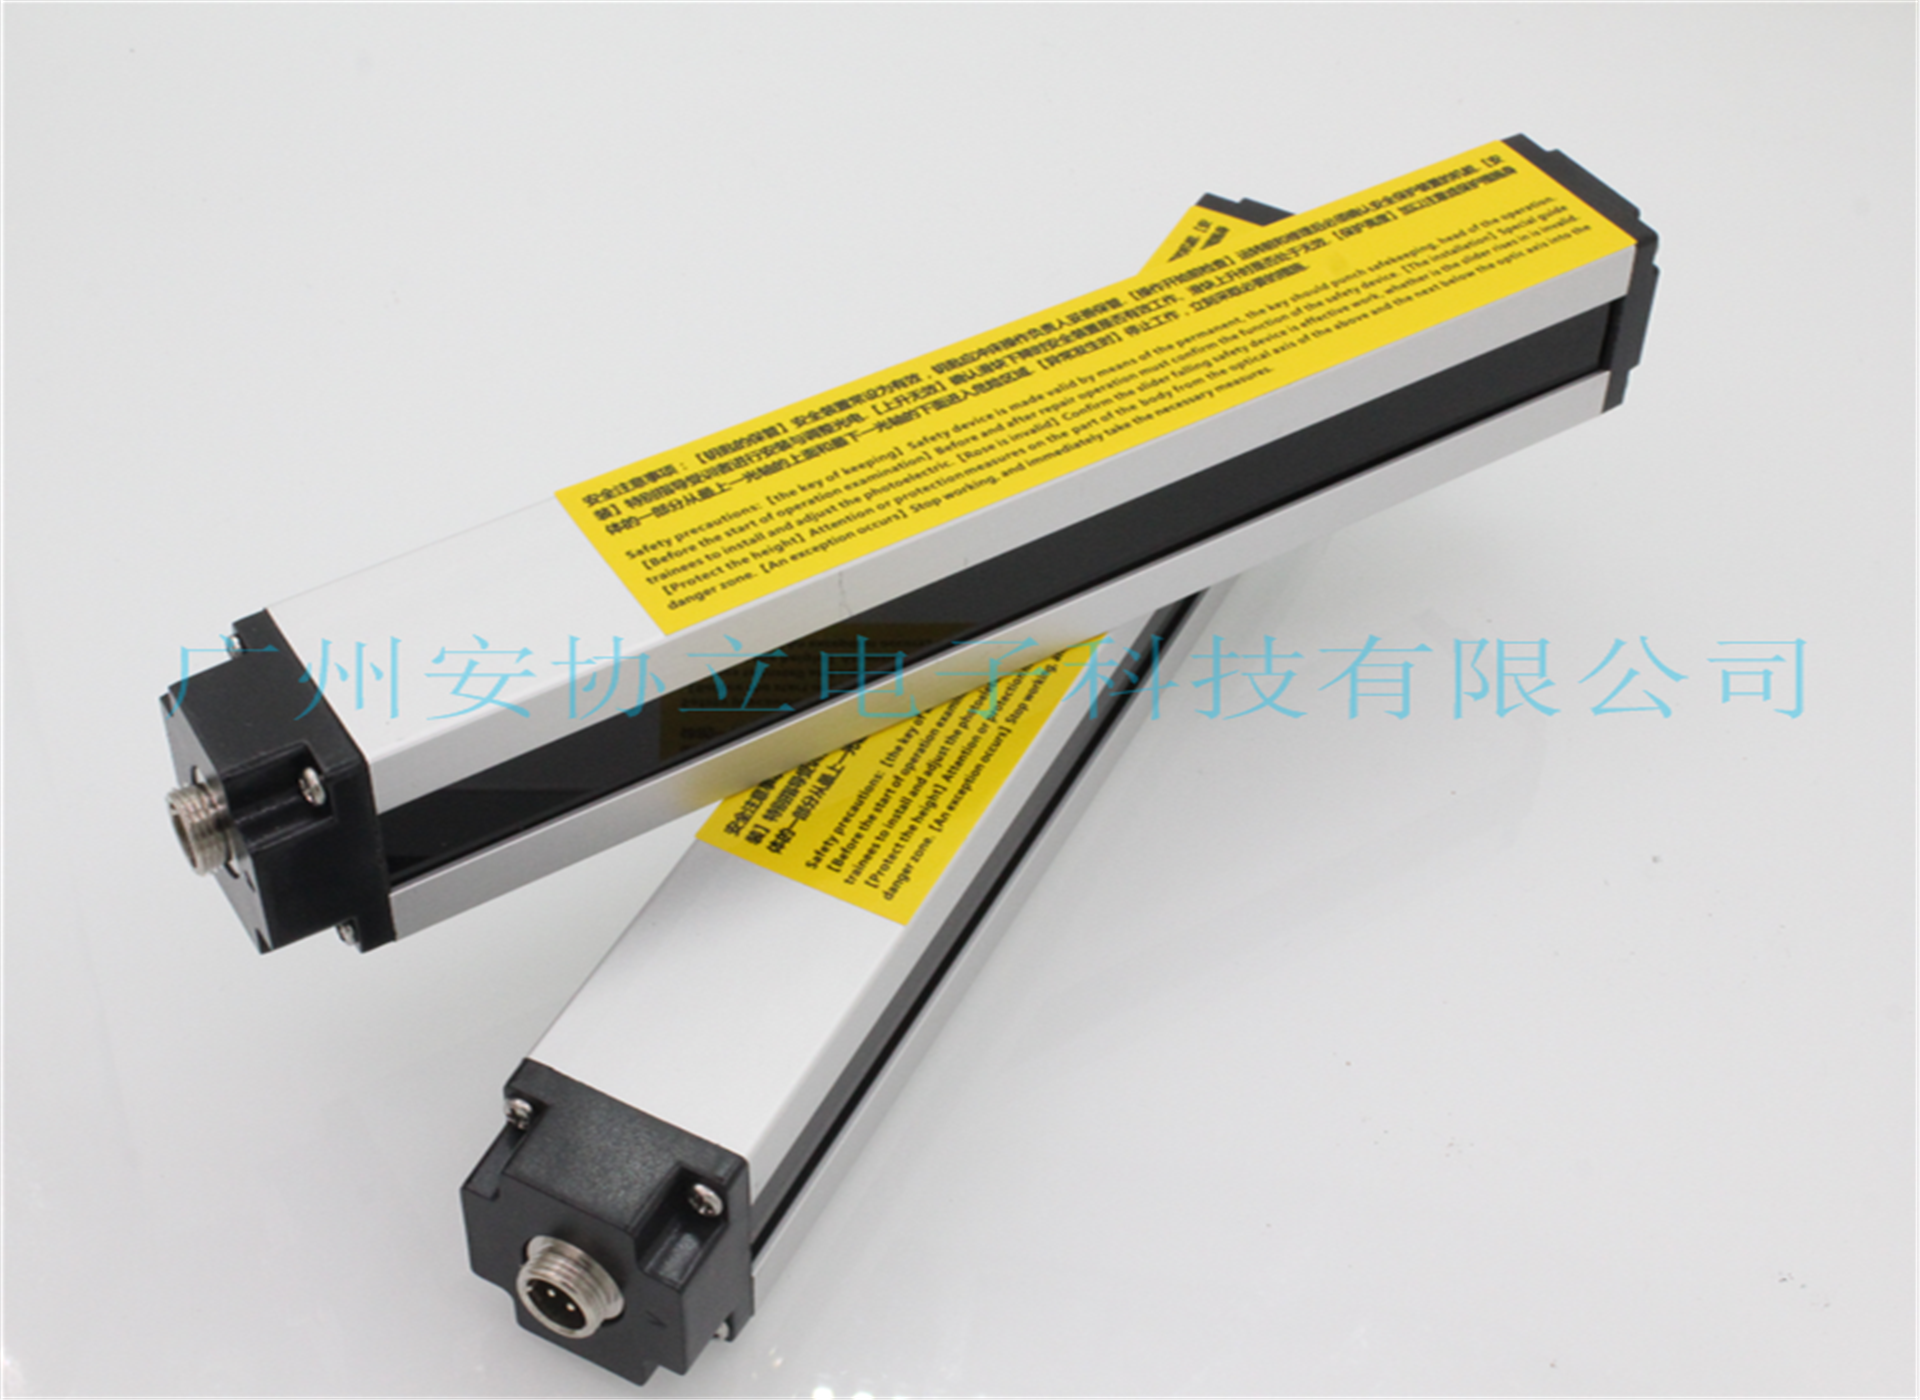 焊接设备专用安全光栅HNG-1240红外传感器